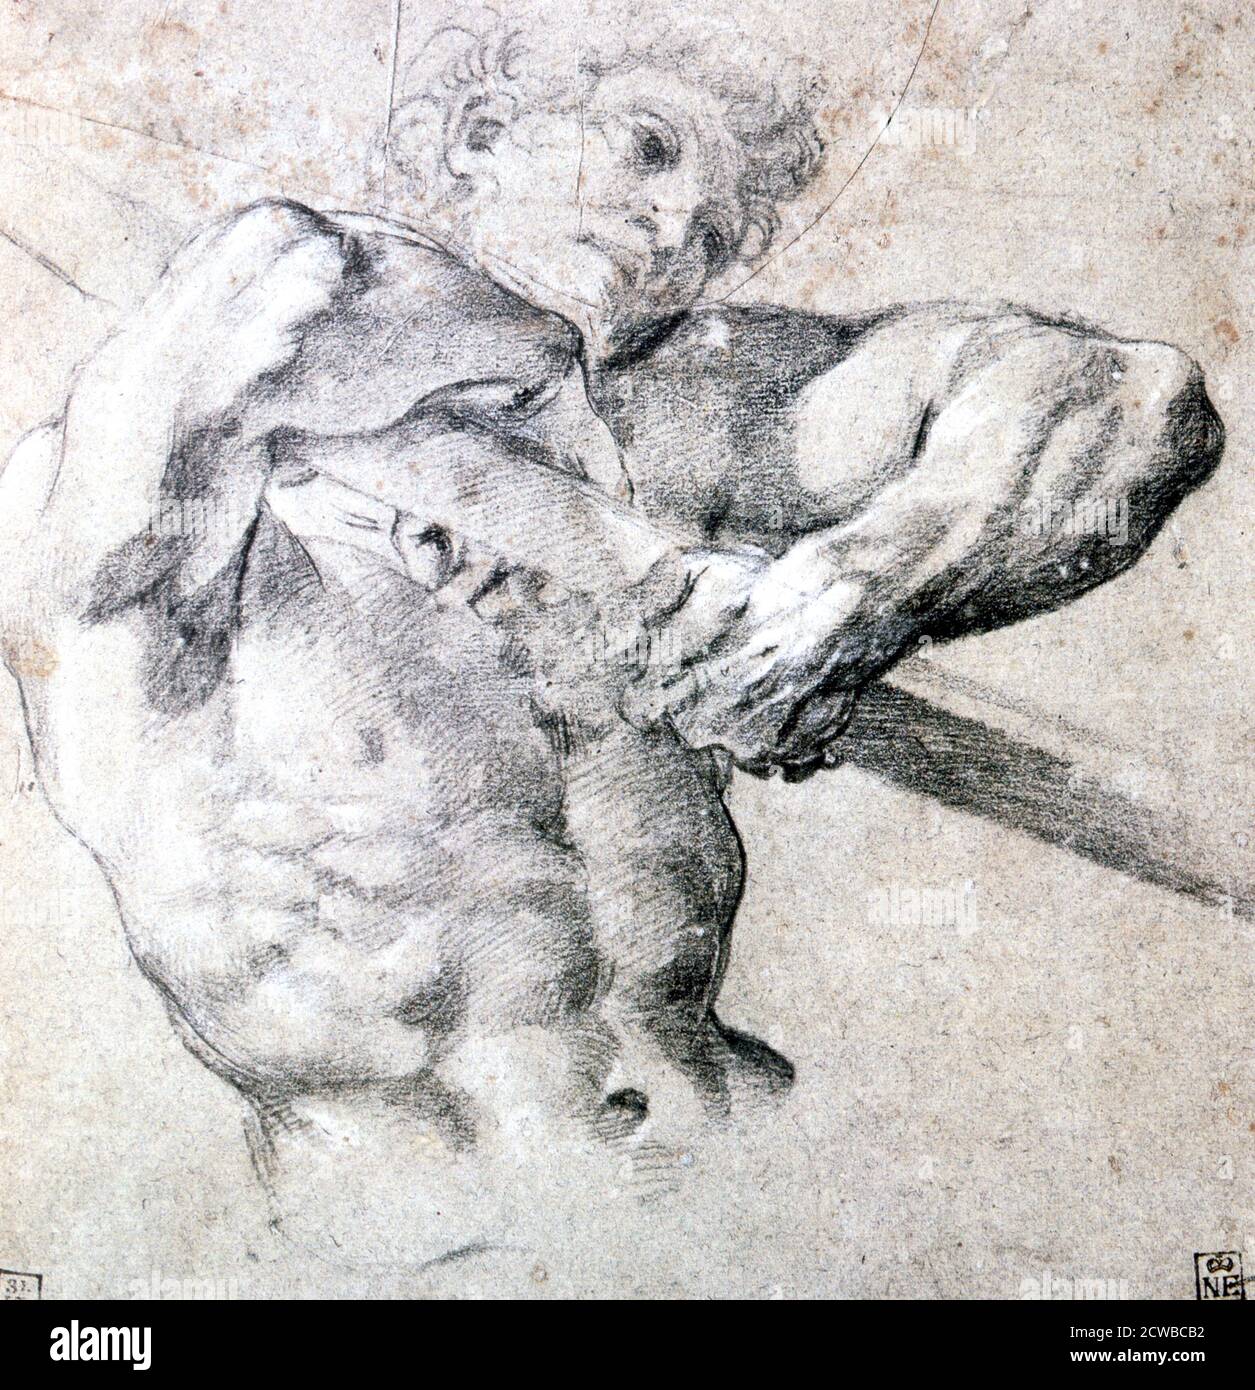 Eine Holzkohle-Illustration von Lodovico Carracci mit dem Titel "die Figur", c1575-1619. Aus der Sammlung des Museums der Schönen Künste, Budapest, Ungarn. Stockfoto